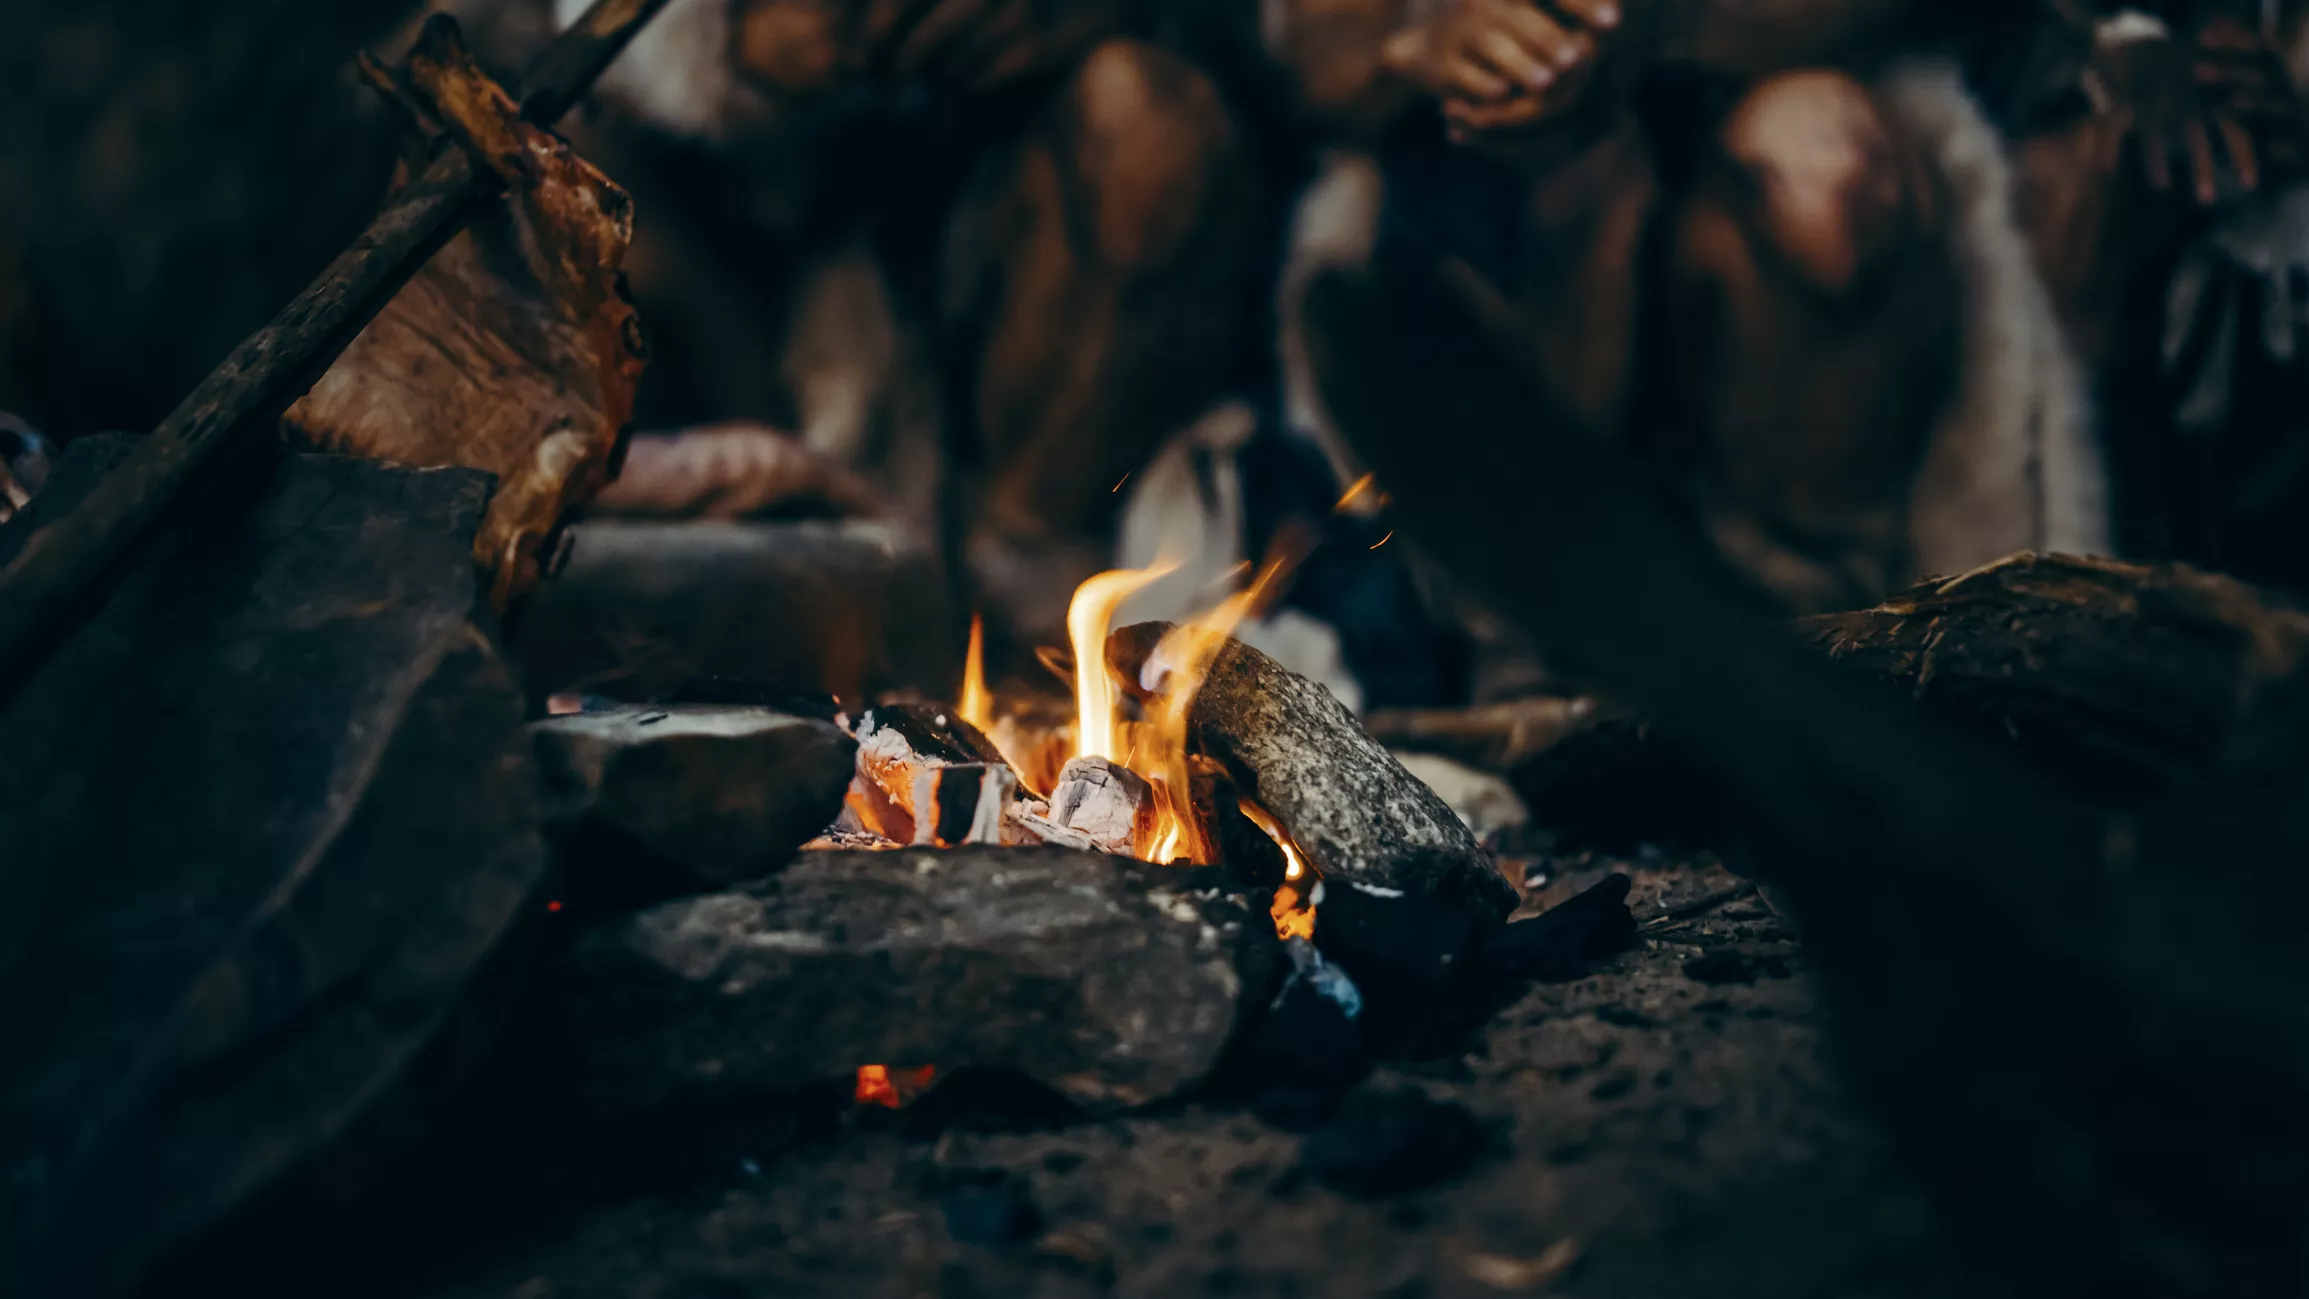 Els homes primitius feien foc a l’interior de coves com la del Bolomor